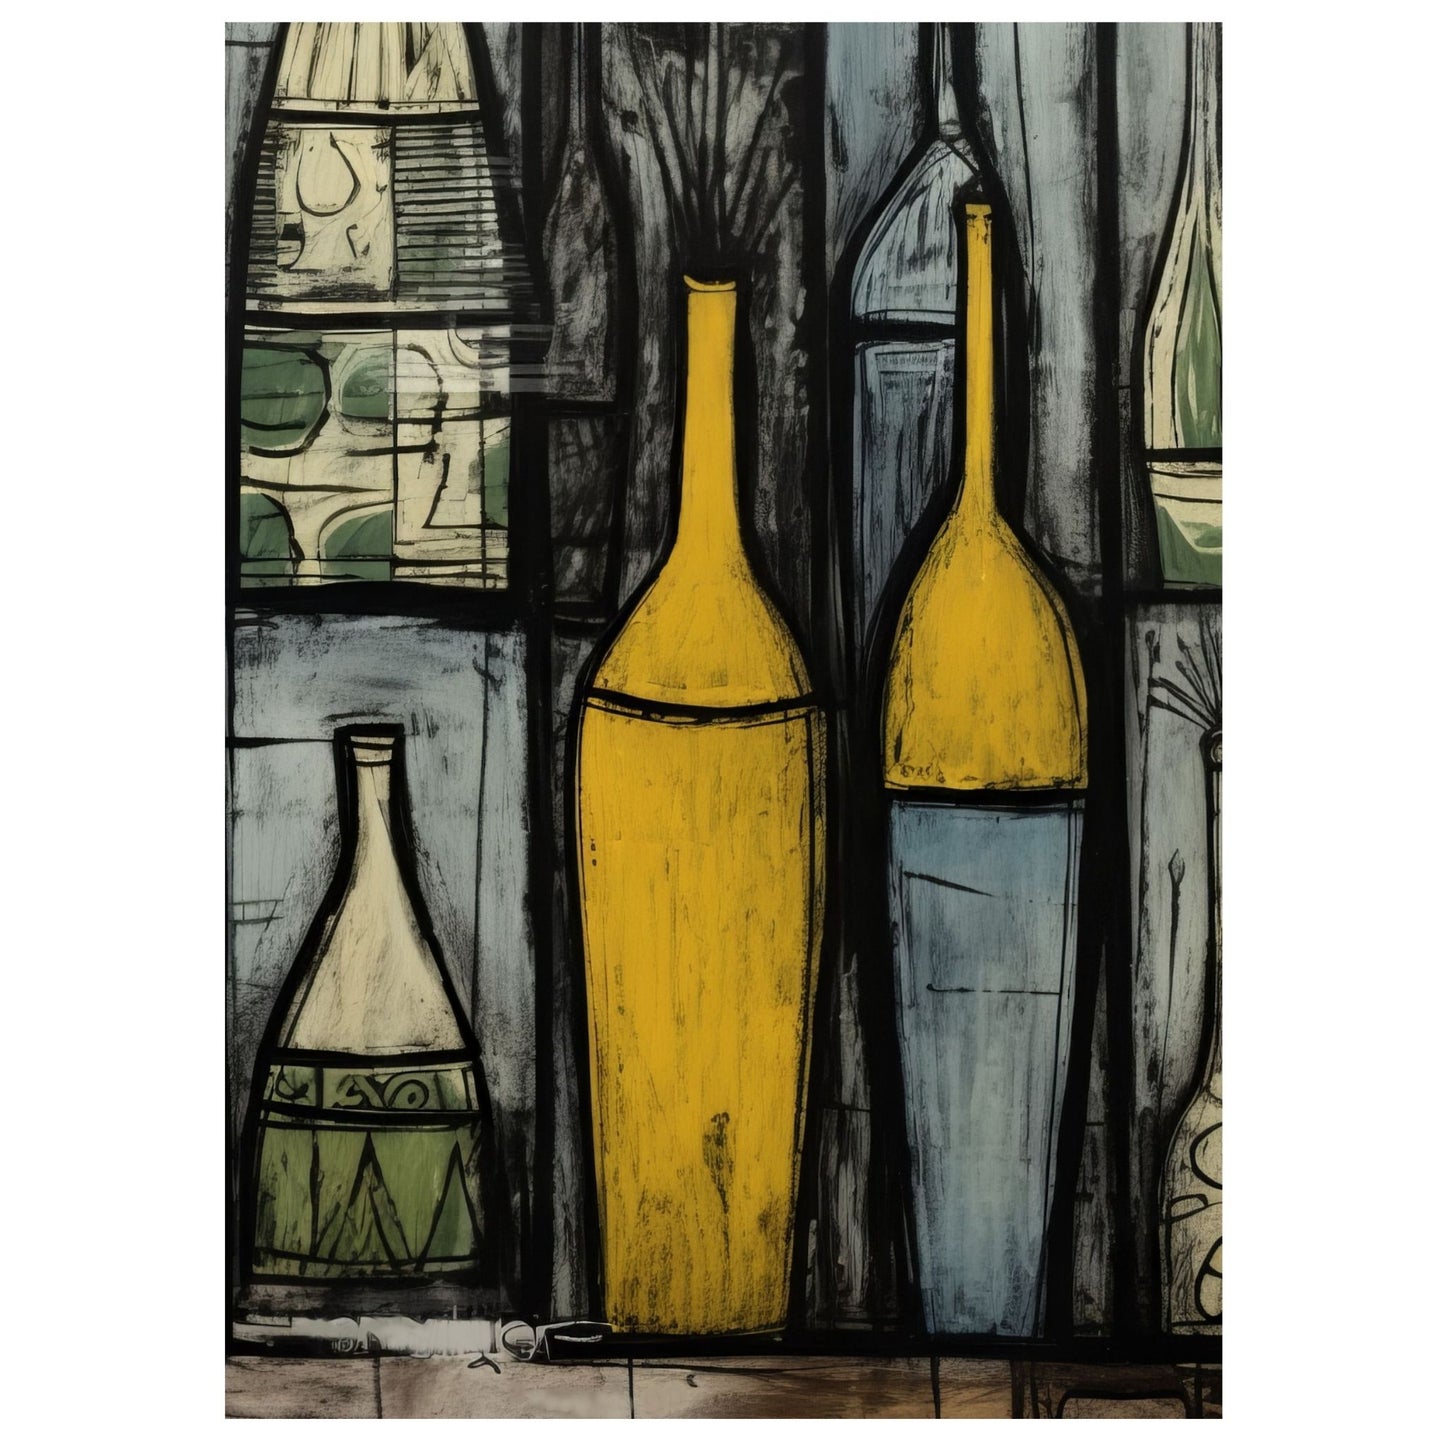 Grafisk motiv på lerret med dekorative flasker i ulike størrelser og fasonger. Motivet har oker, lyseblå, grå og sort som hovedfarger, og innslag av beige og grønne felter. 